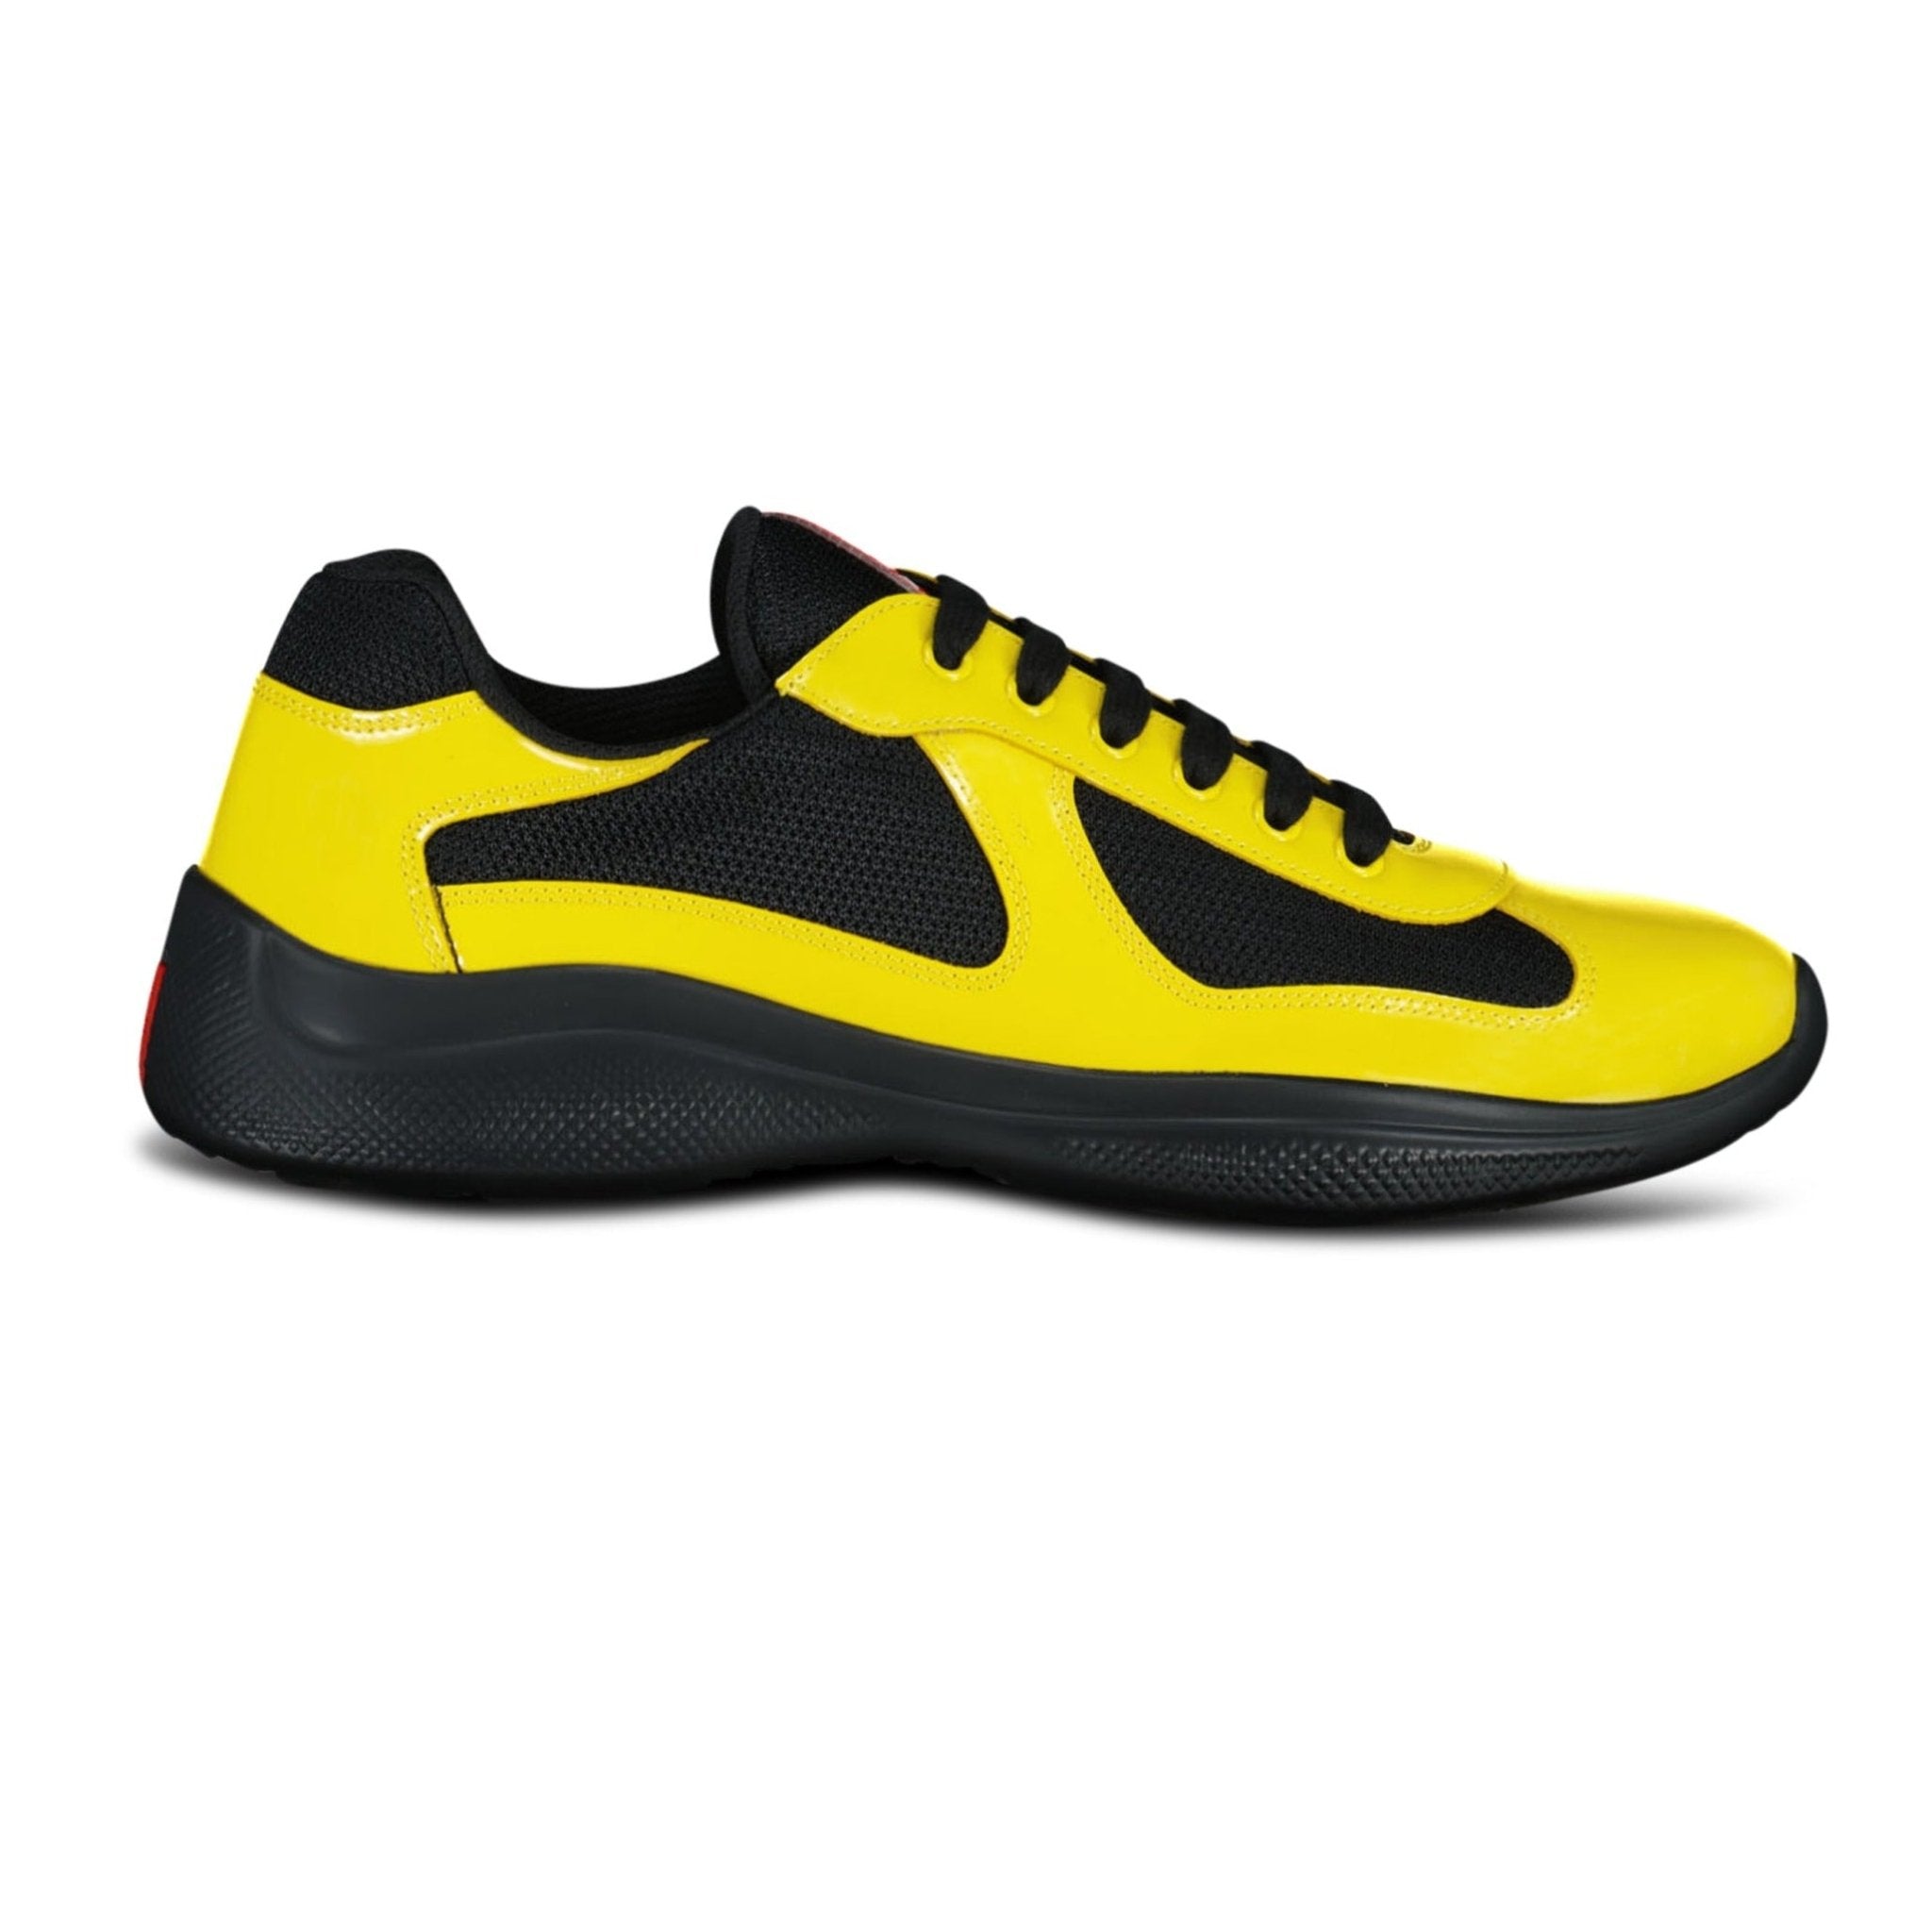 Prada Americas Cup Sneakers Yellow & Black